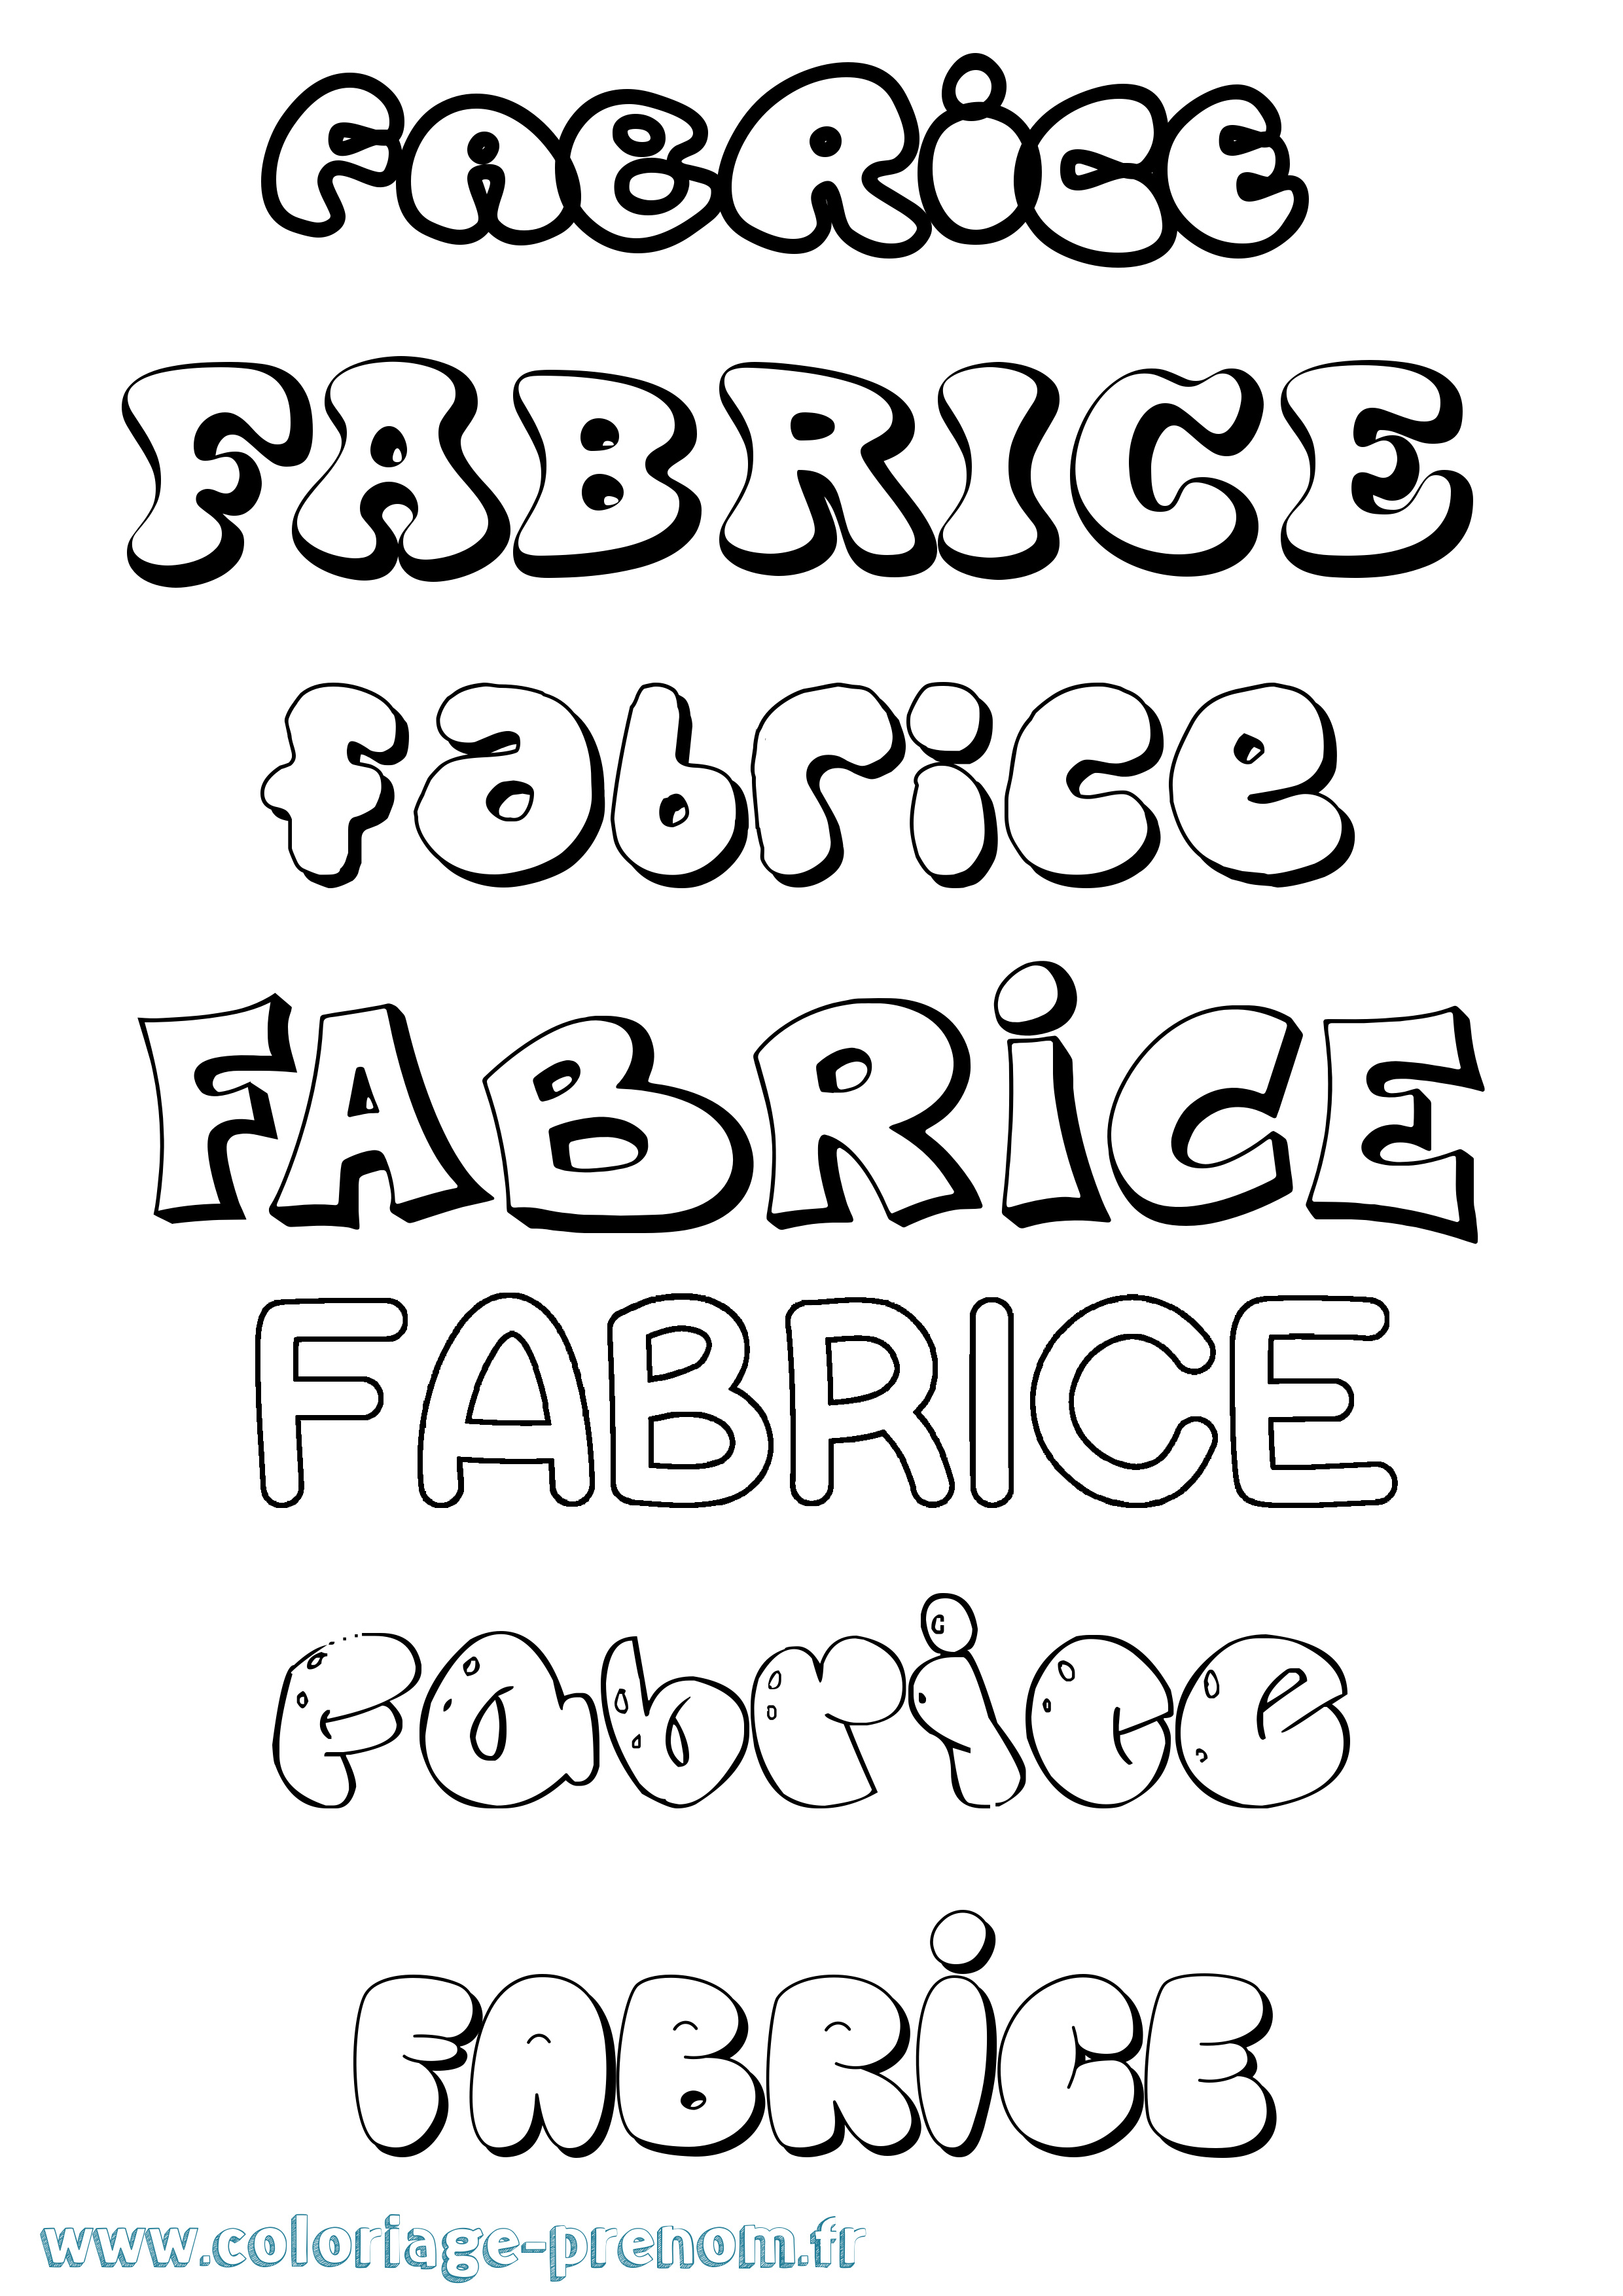 Coloriage prénom Fabrice Bubble